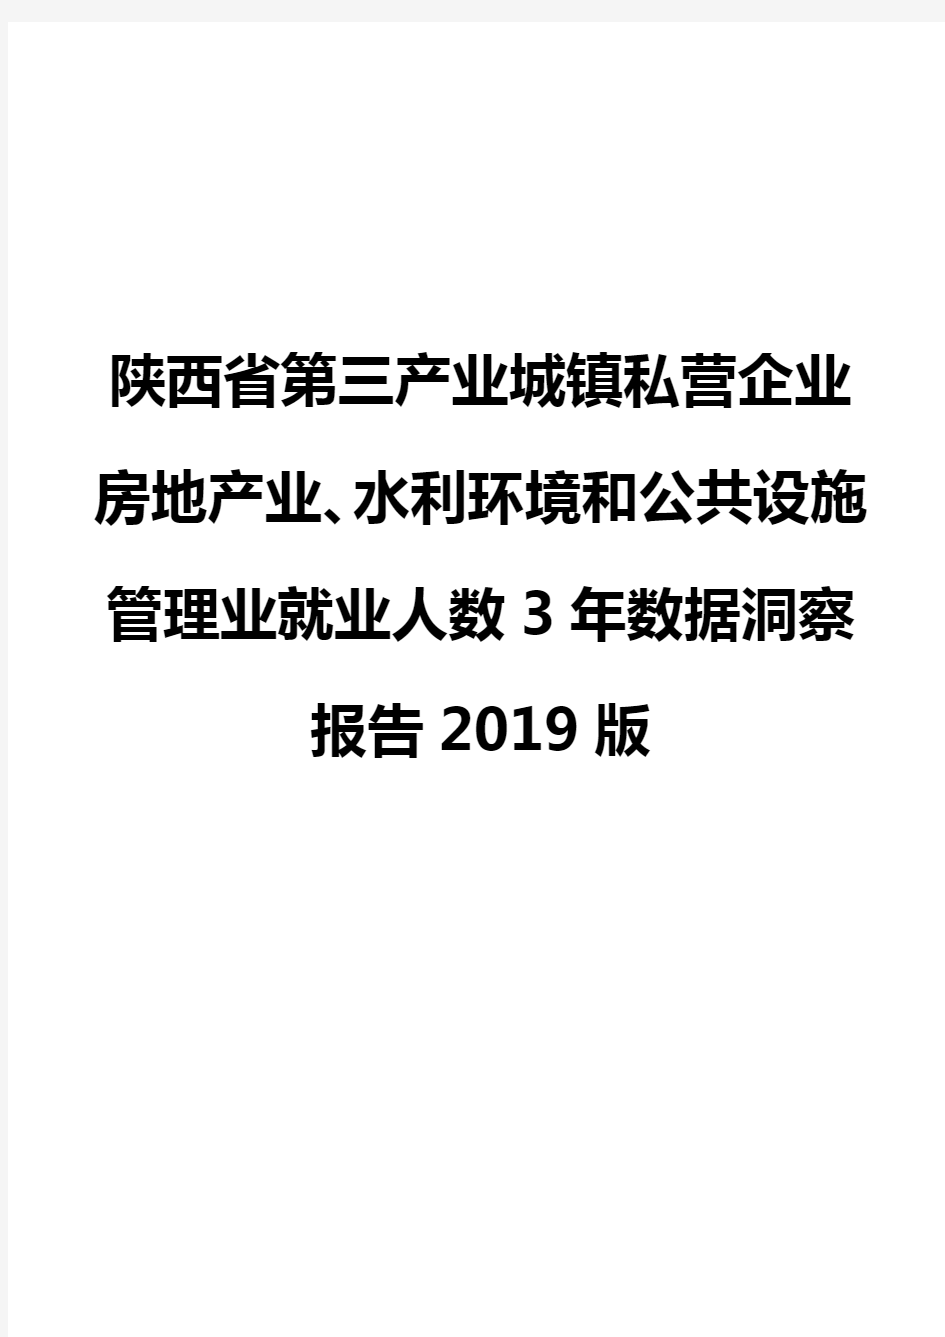 陕西省第三产业城镇私营企业房地产业、水利环境和公共设施管理业就业人数3年数据洞察报告2019版